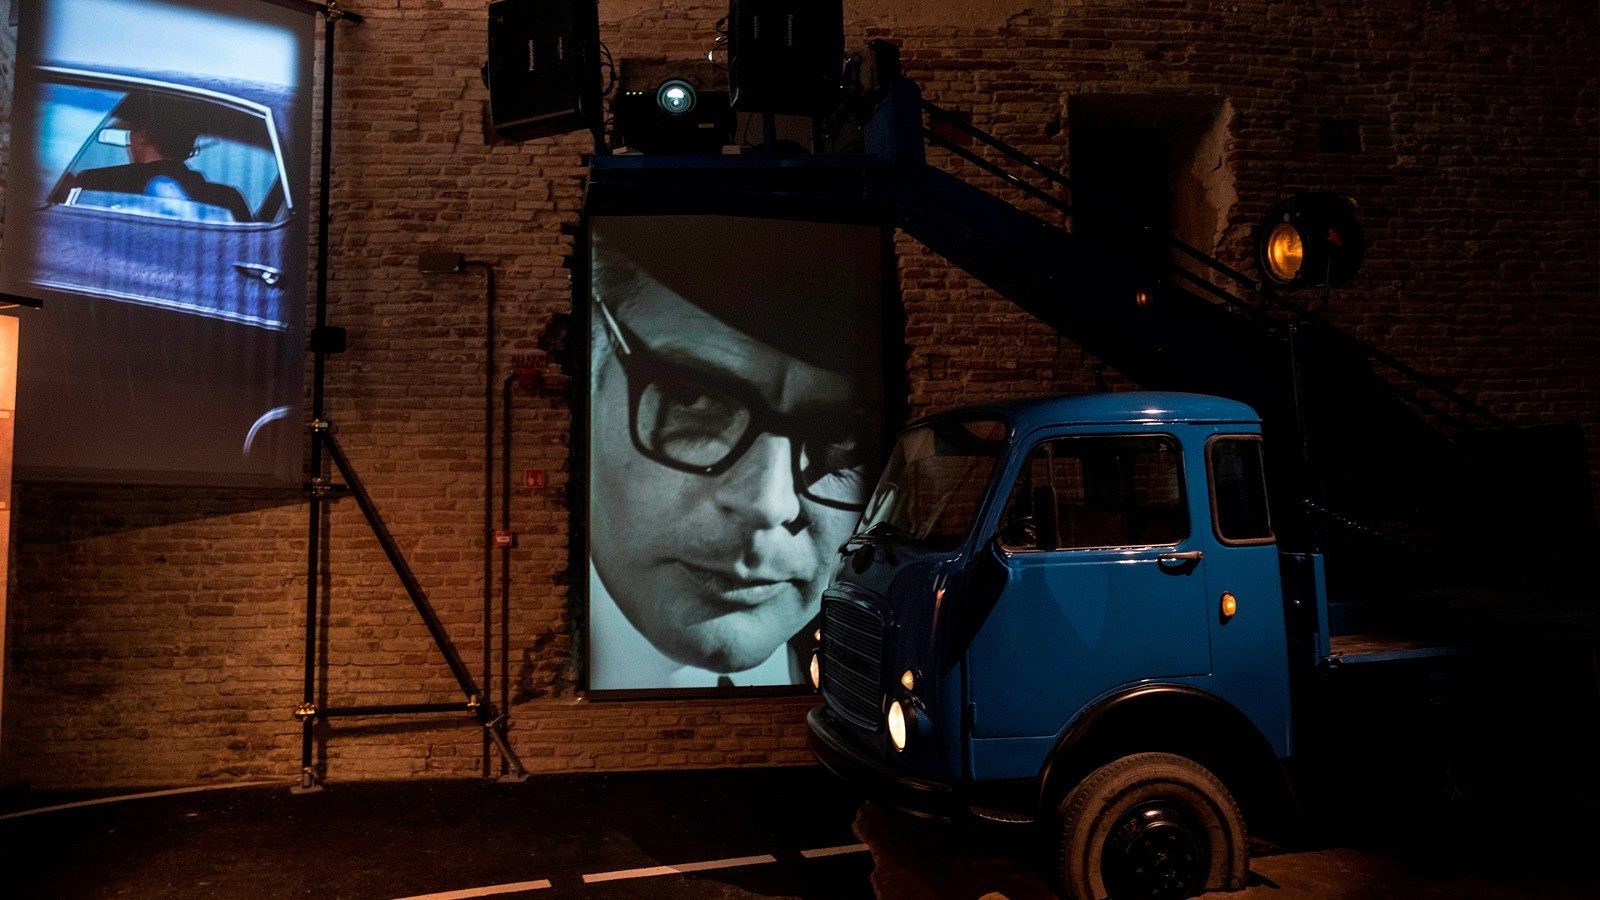 Rímini rinde homenaje a Fellini en un museo dedicado a su obra             